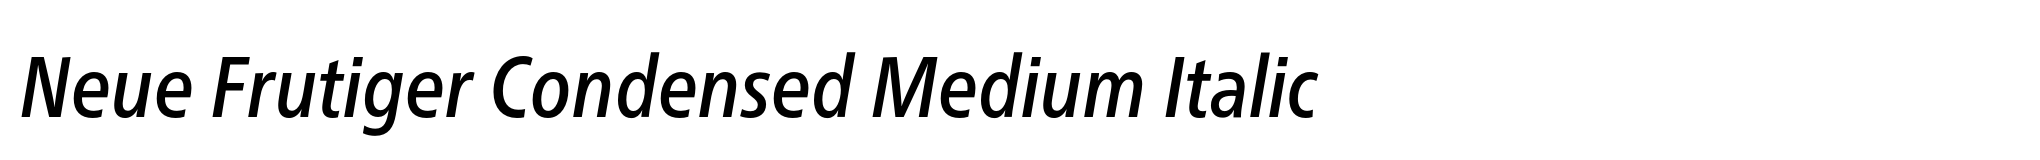 Neue Frutiger Condensed Medium Italic image